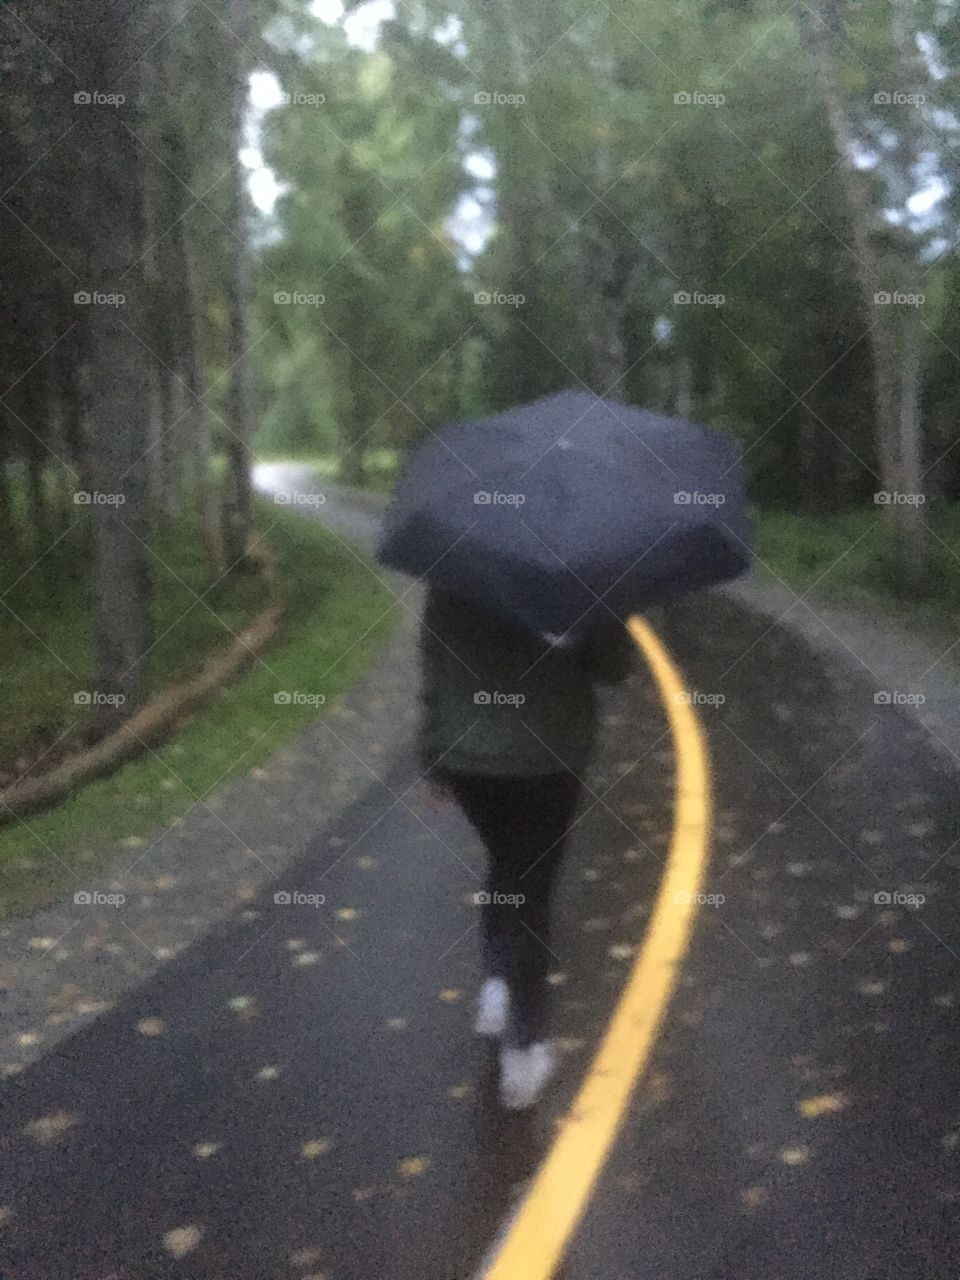 Walks on an Alaskan Rainy day help clear my mind. 